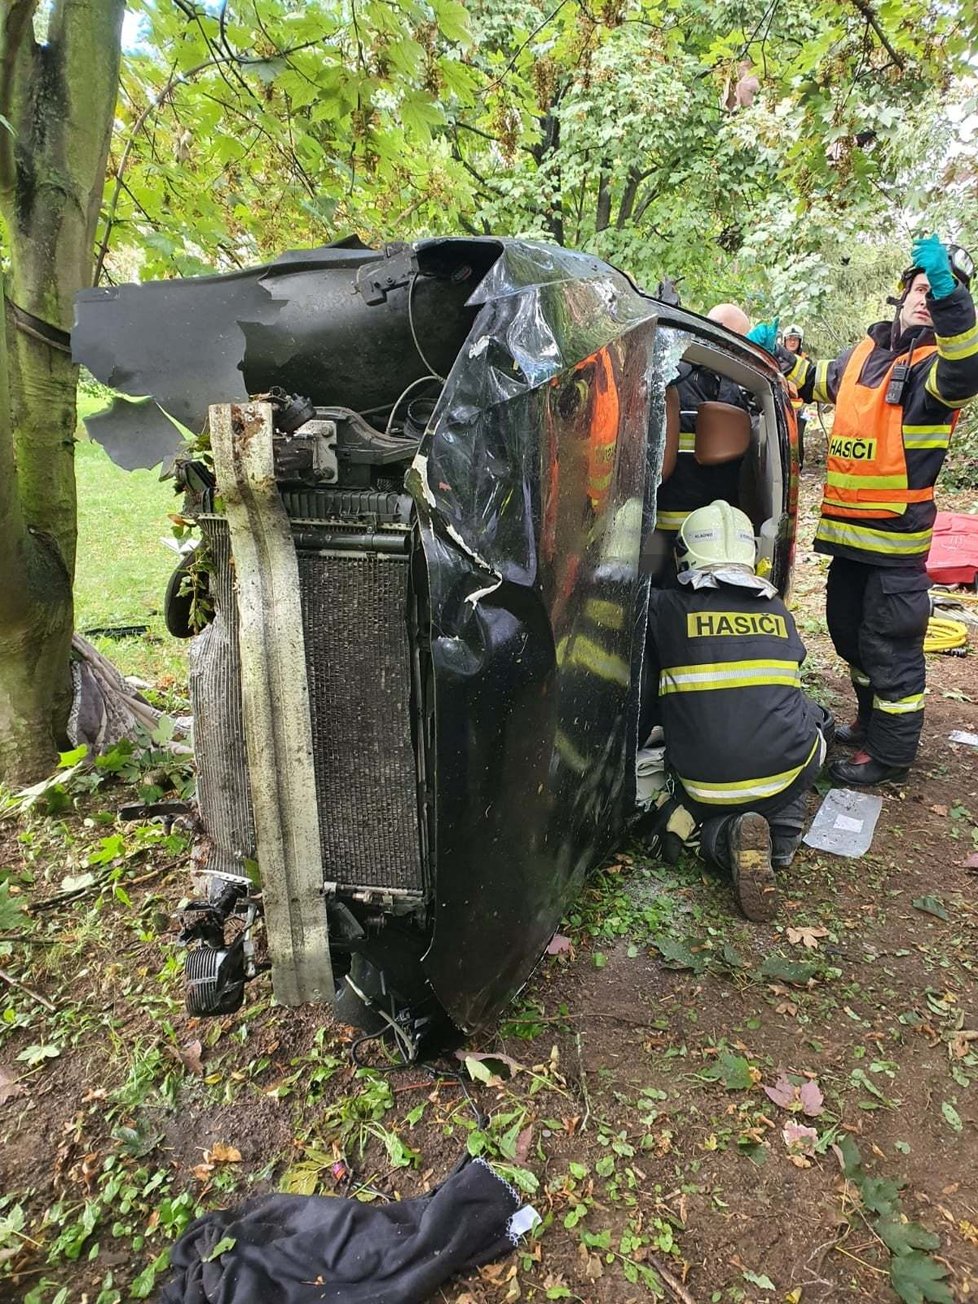 Vážná nehoda se stala na dálnici D7 u Buštěhradu. Auto vylétlo přes svodidla mimo jízdní pruh, po pár kotrmelcích skončilo v zahradě. Řidička a spolujezdkyně utrpěly vážná zranění.